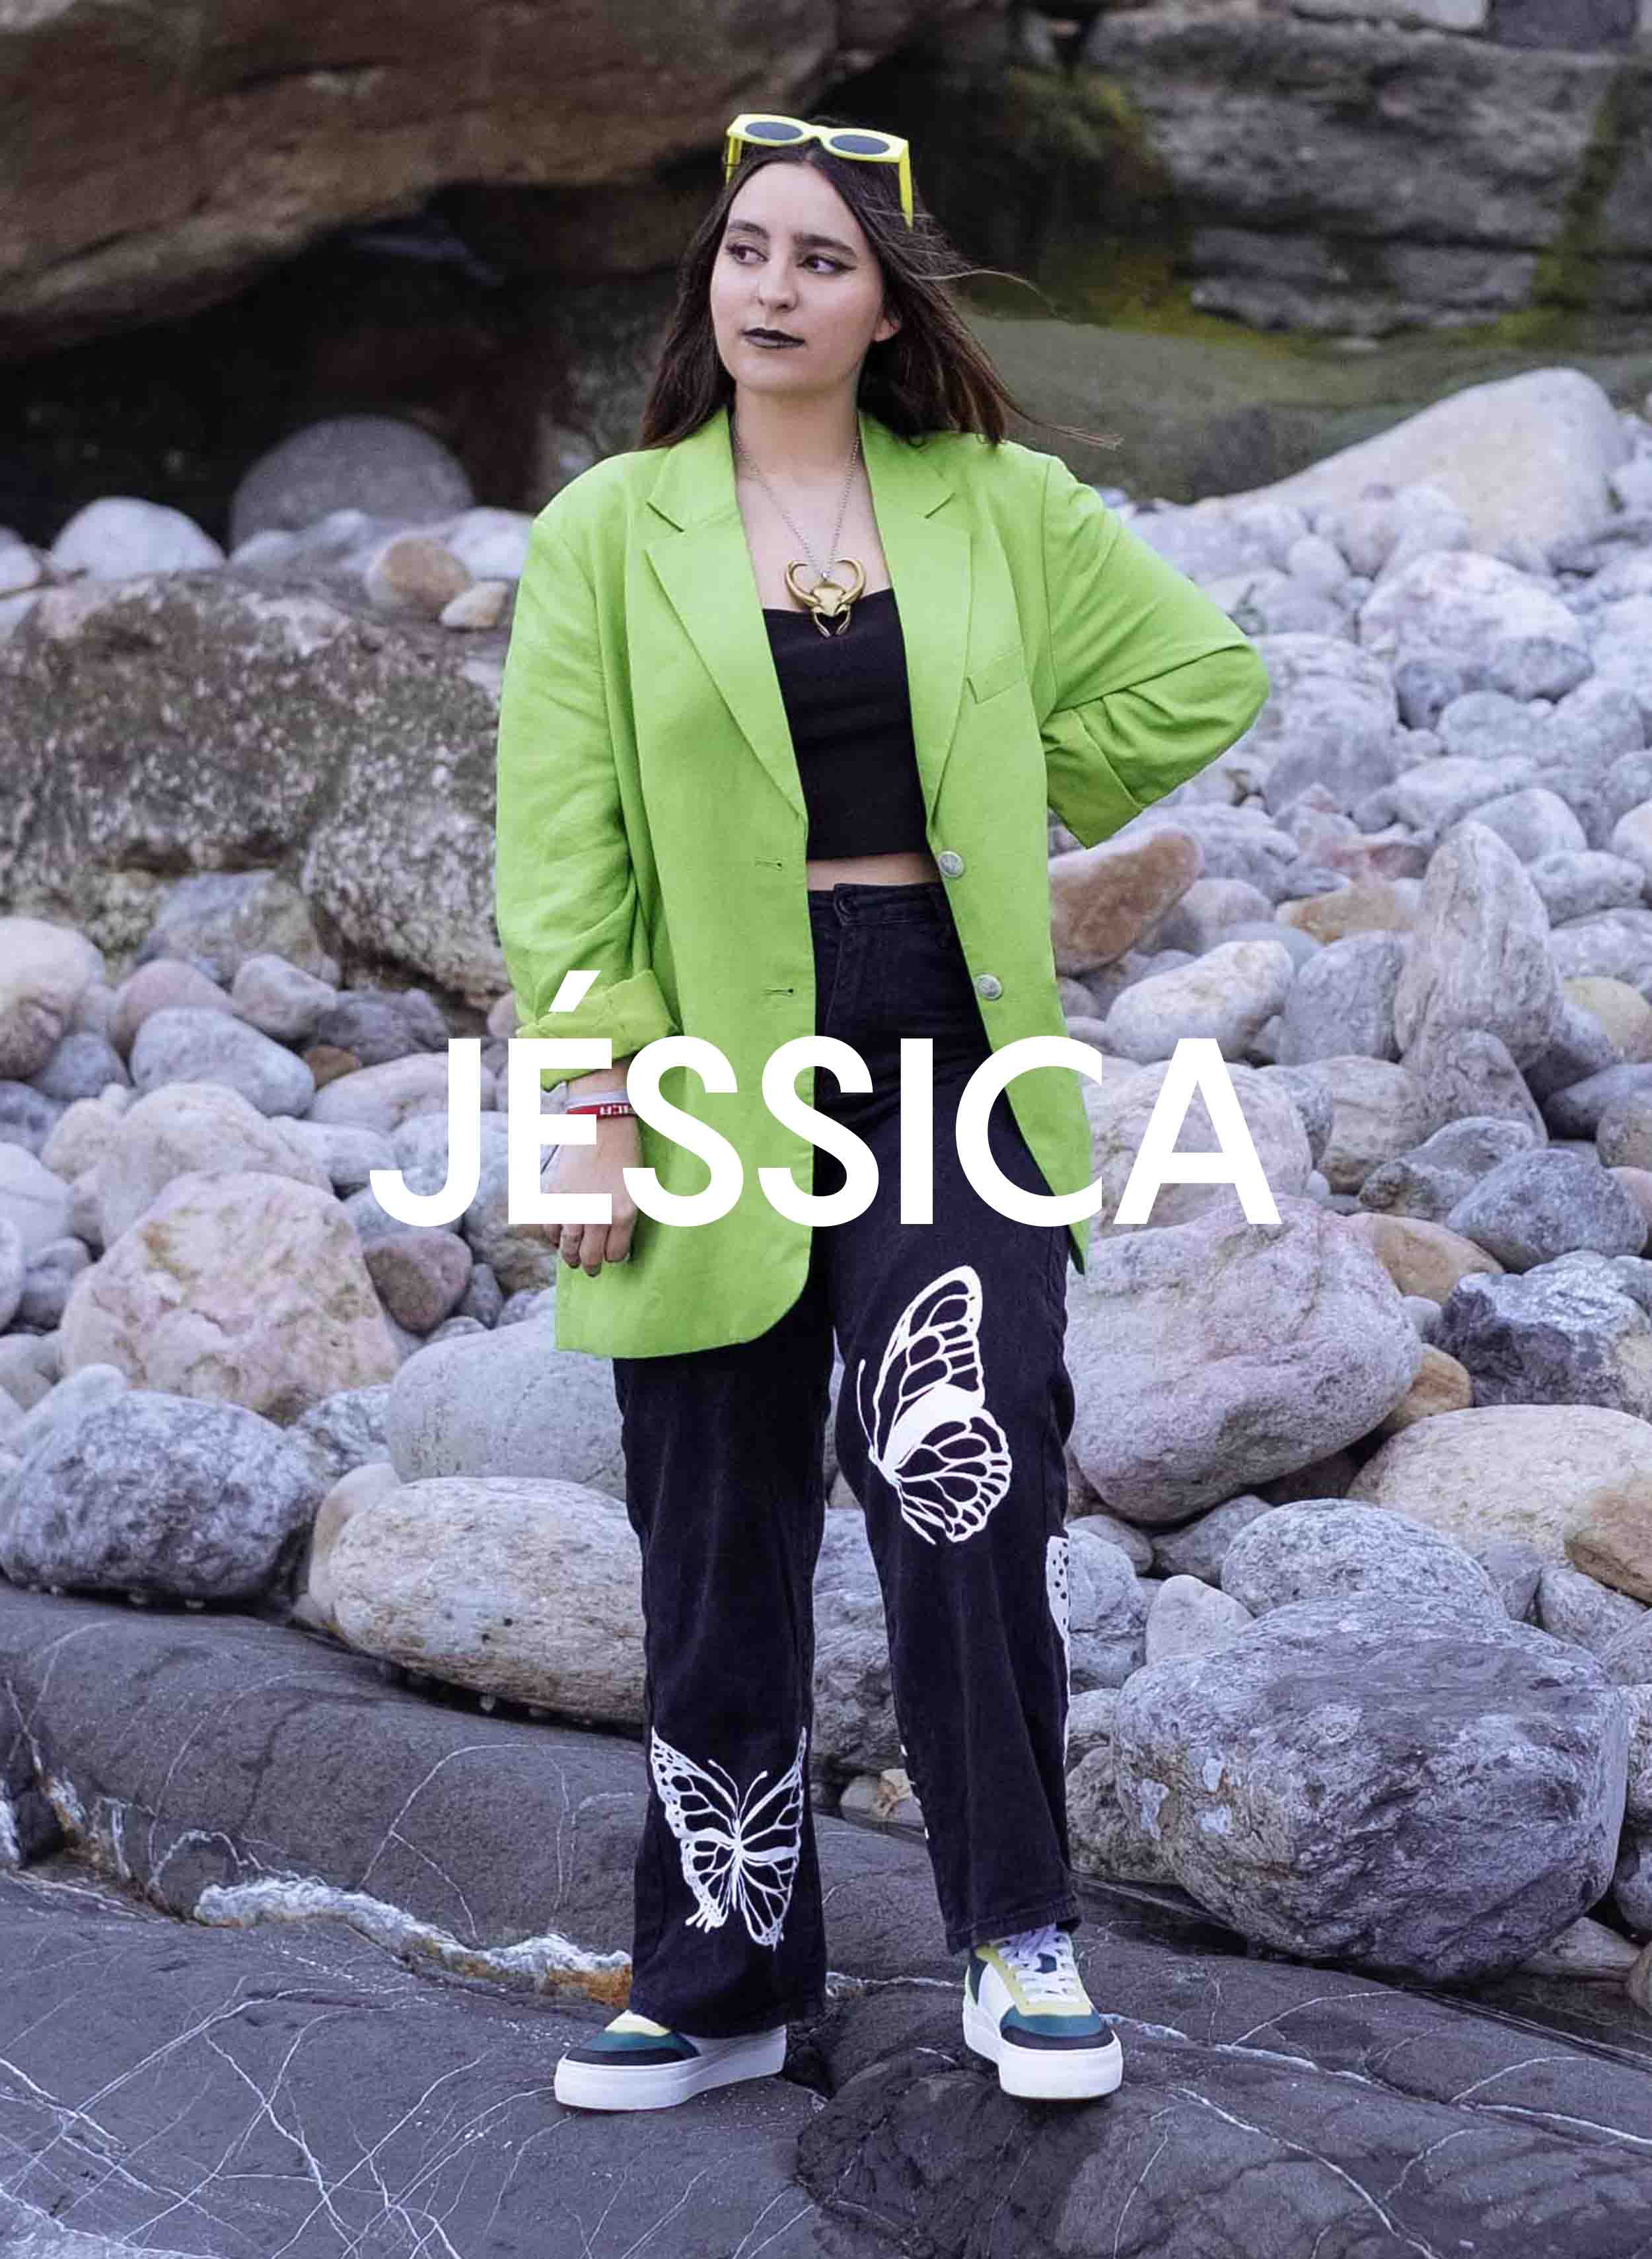 Jessica, con una chaqueta verde y pantalones negros, de pie sobre las rocas, Diverge sneakers, promoviendo el impacto social y el calzado personalizado a través del proyecto Imagine.